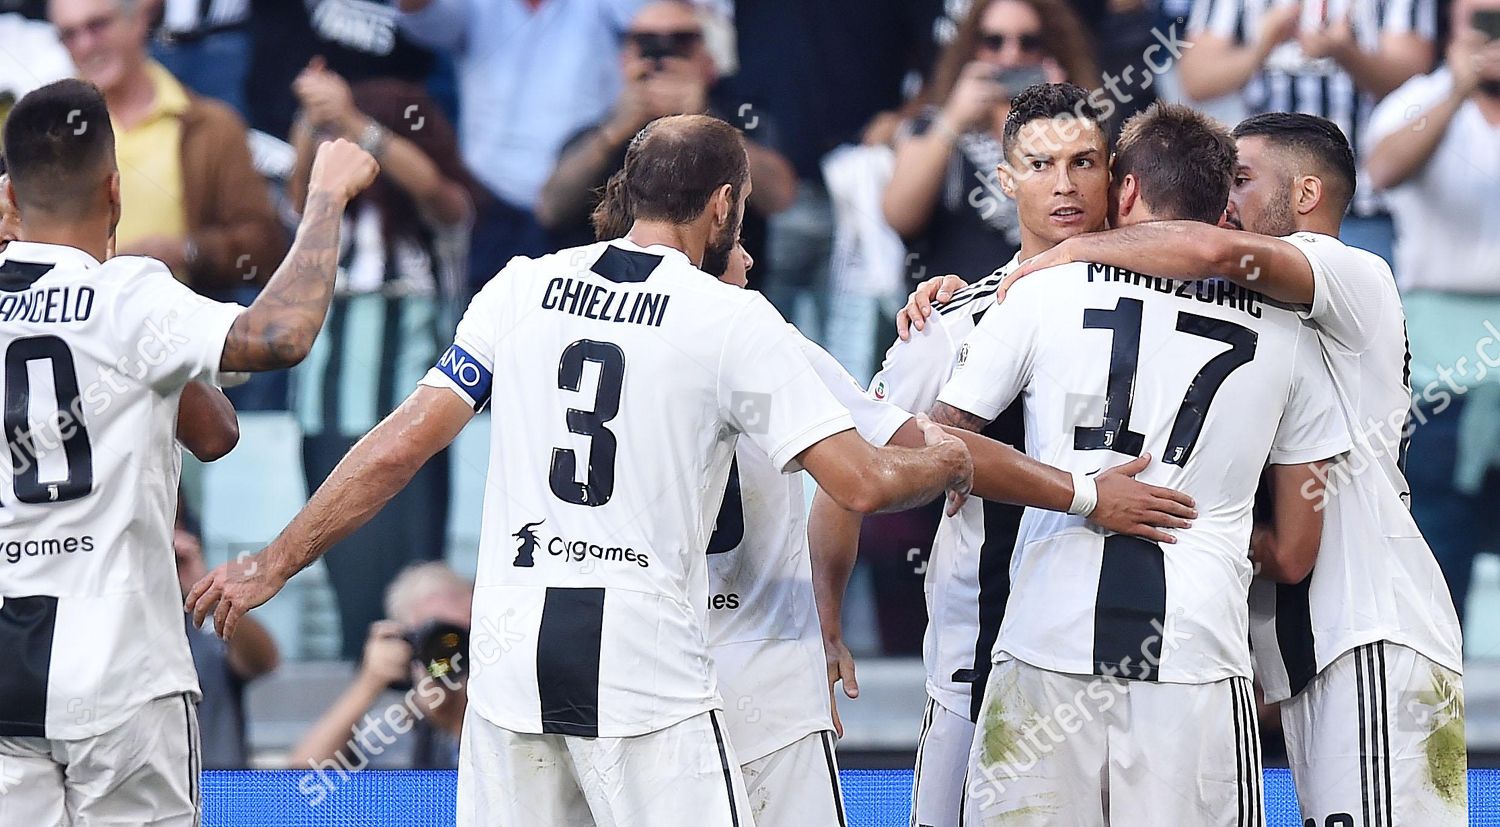 Juventus Mario Mandzukic 2r Celebrates Teammates After